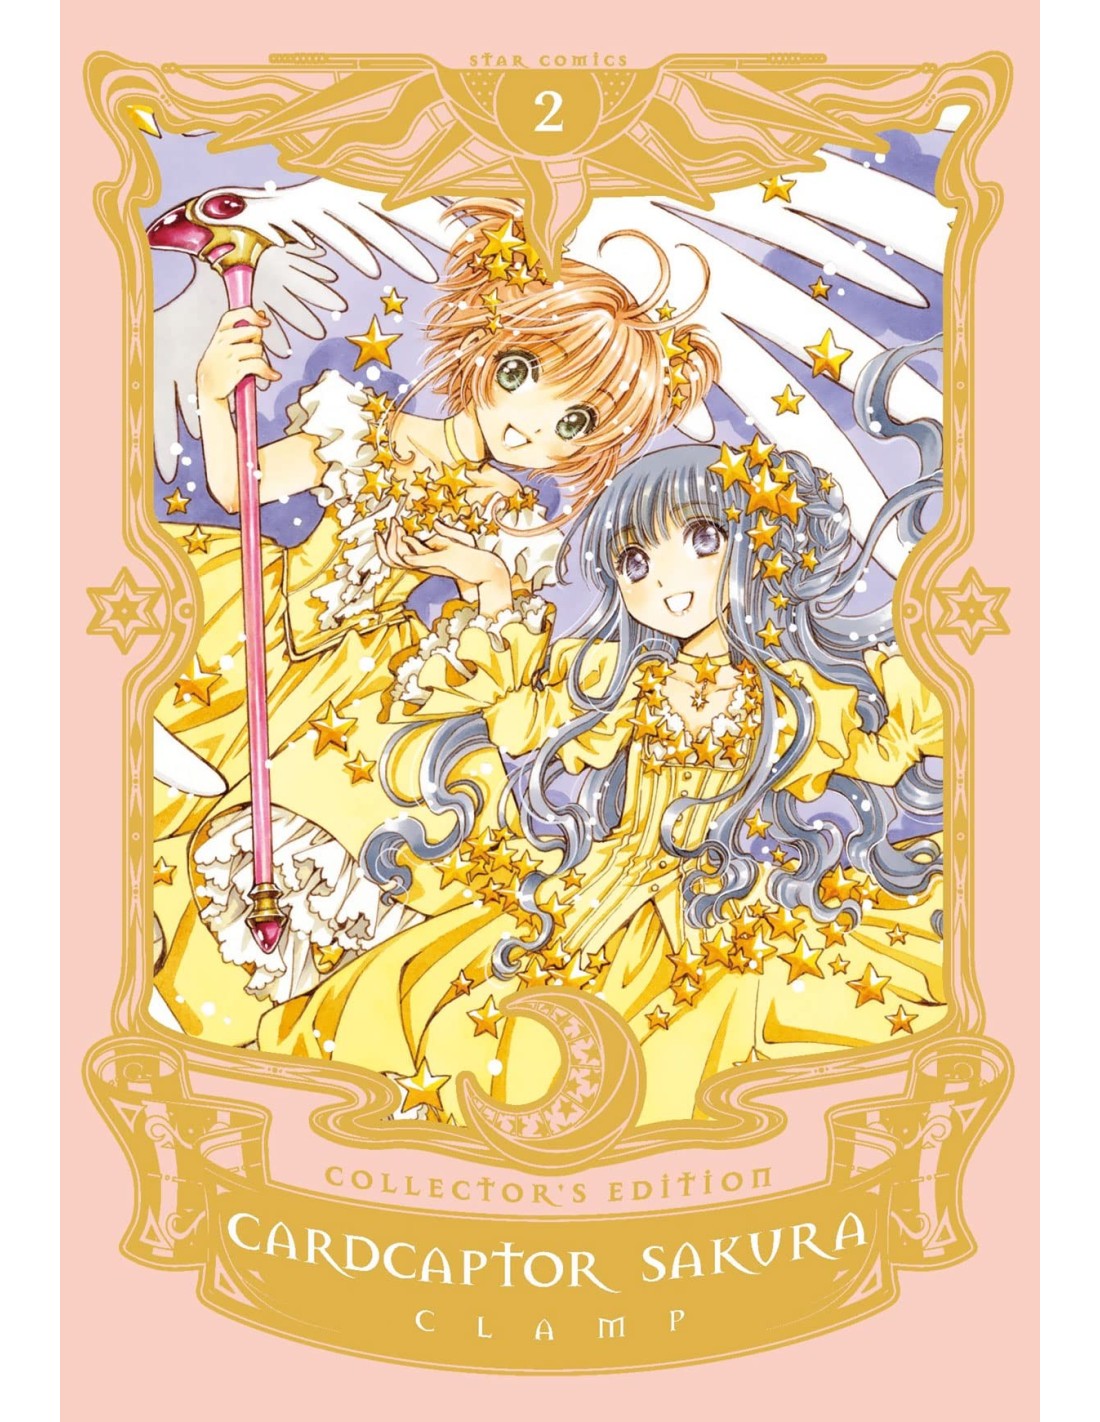 manga-card-captor-sakura-nr-2-collector-s-edition-star-comics